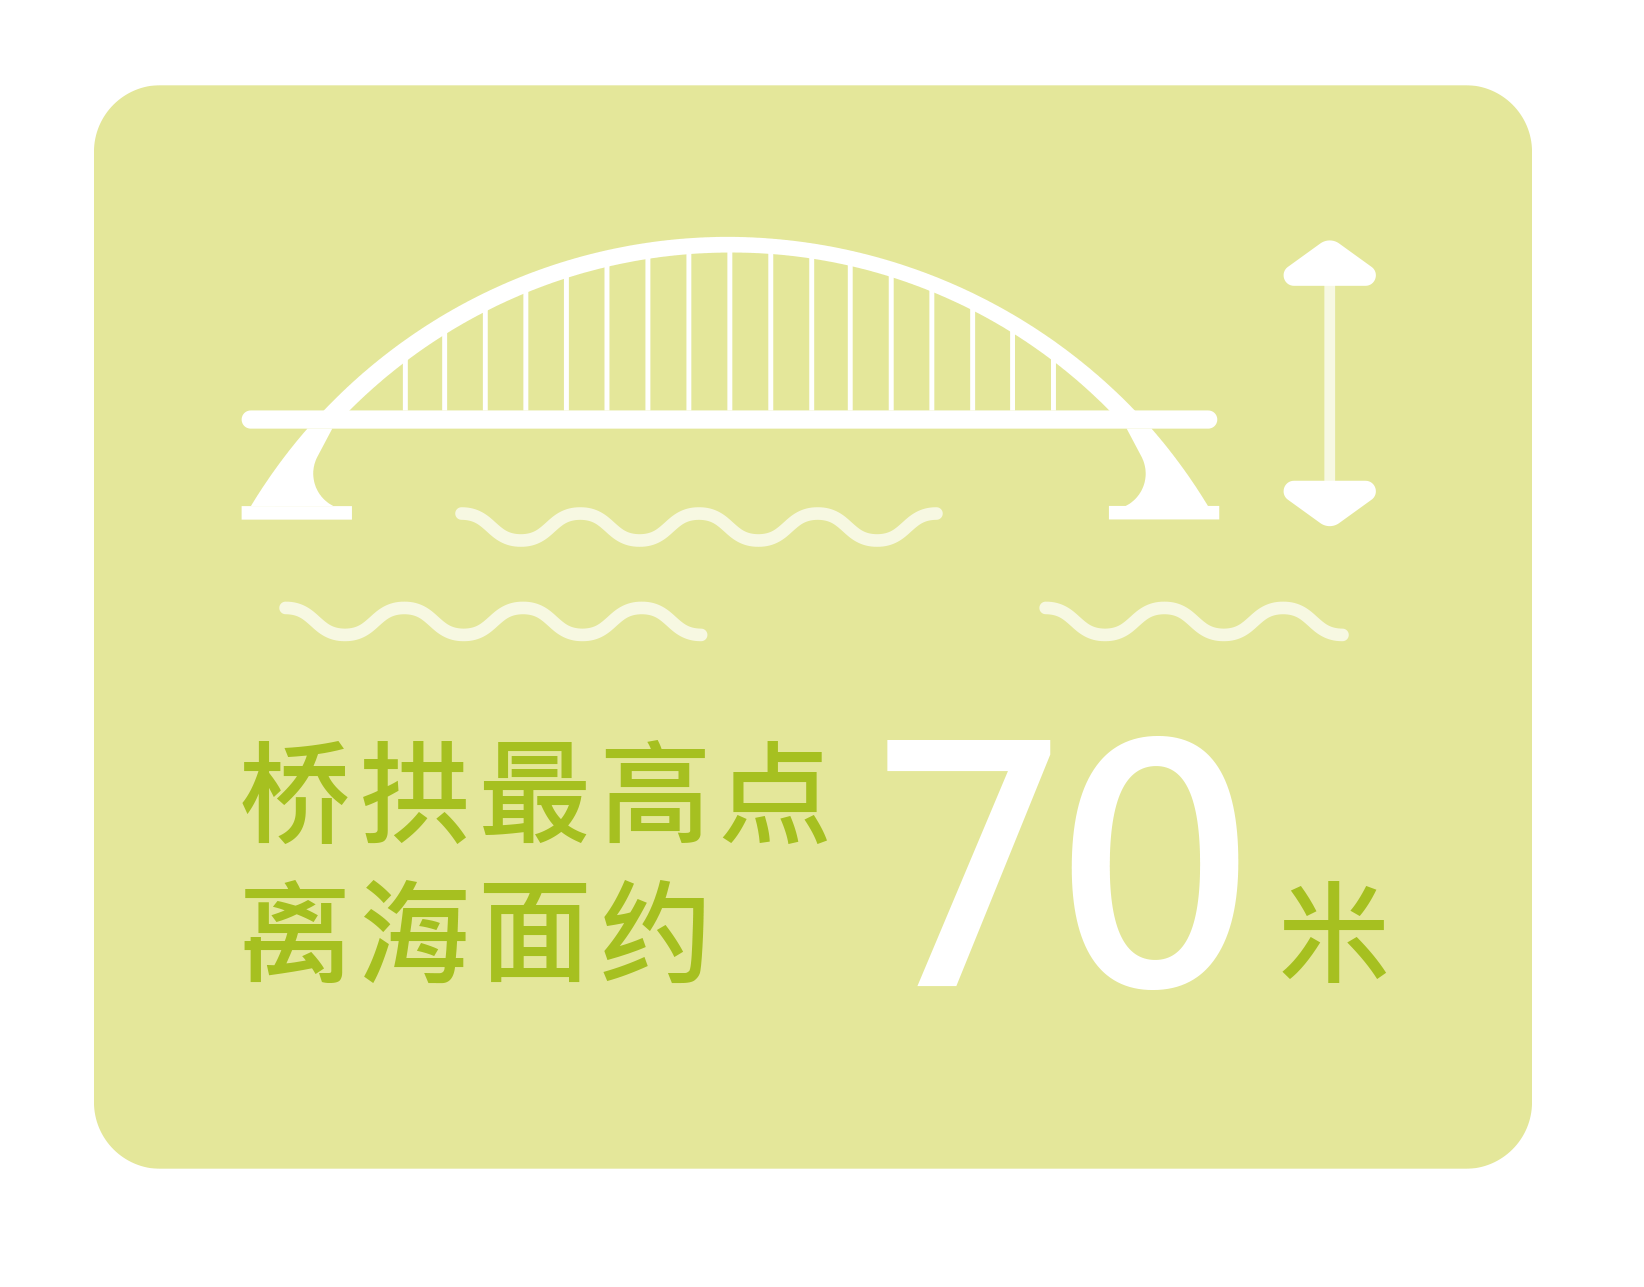 桥拱最高点离海面约70米